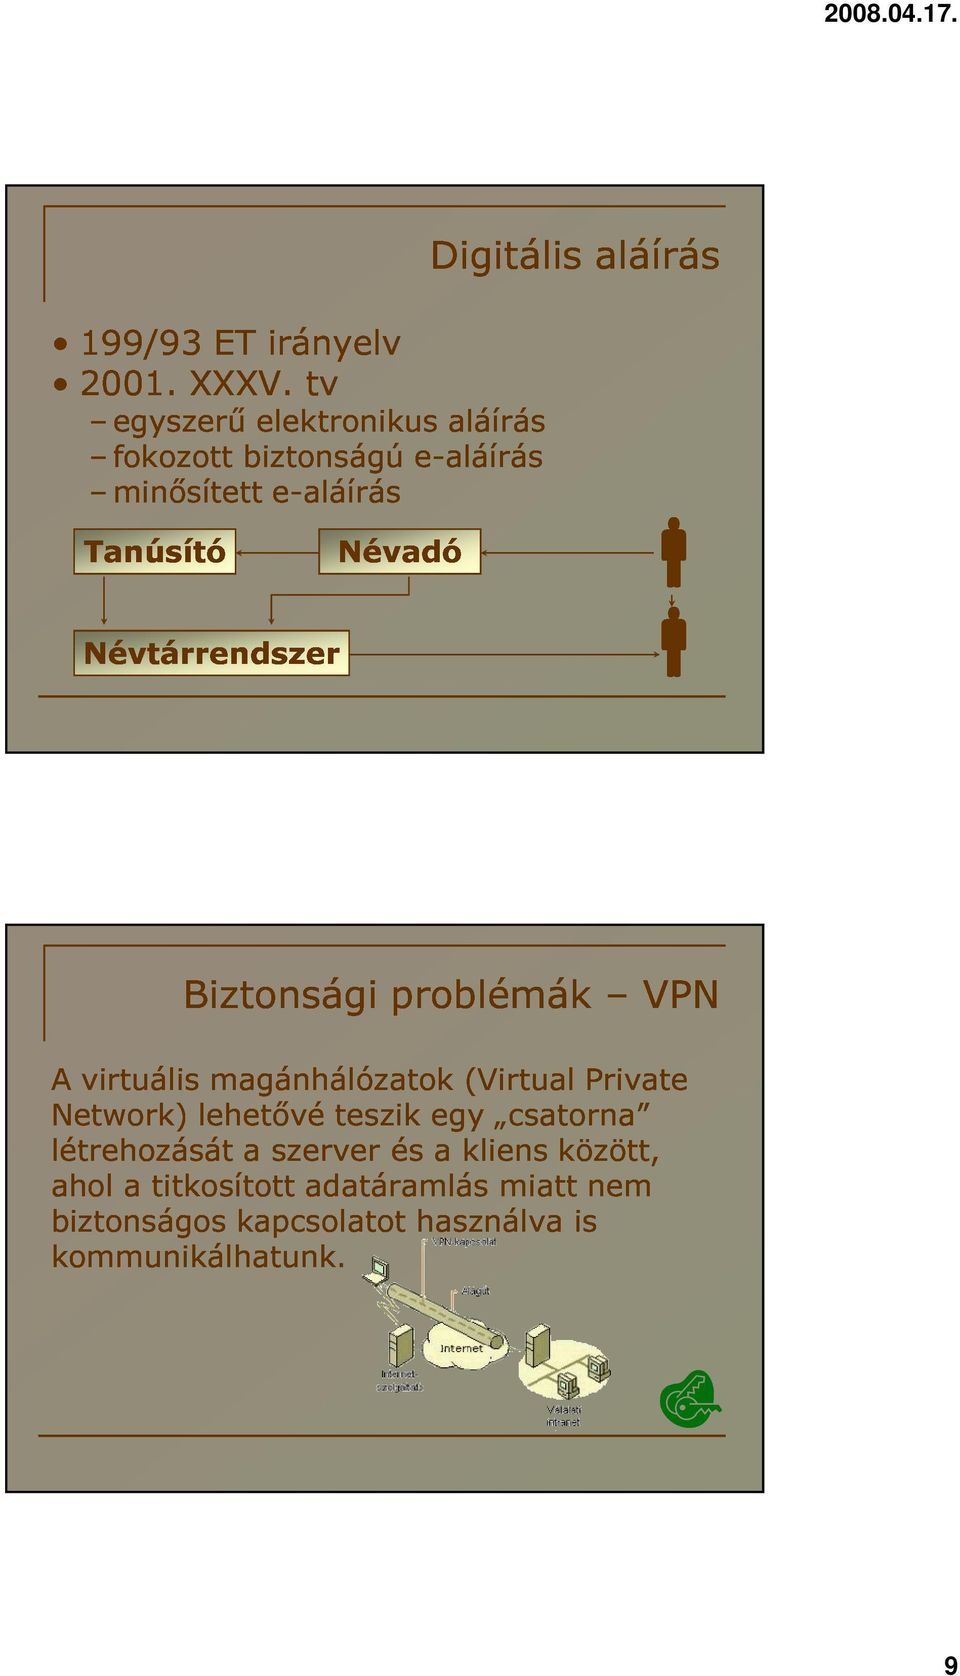 Biztonsági magánhálózatok problémák (Virtual Private VPN Network) létrehozását ahol lehetővé a